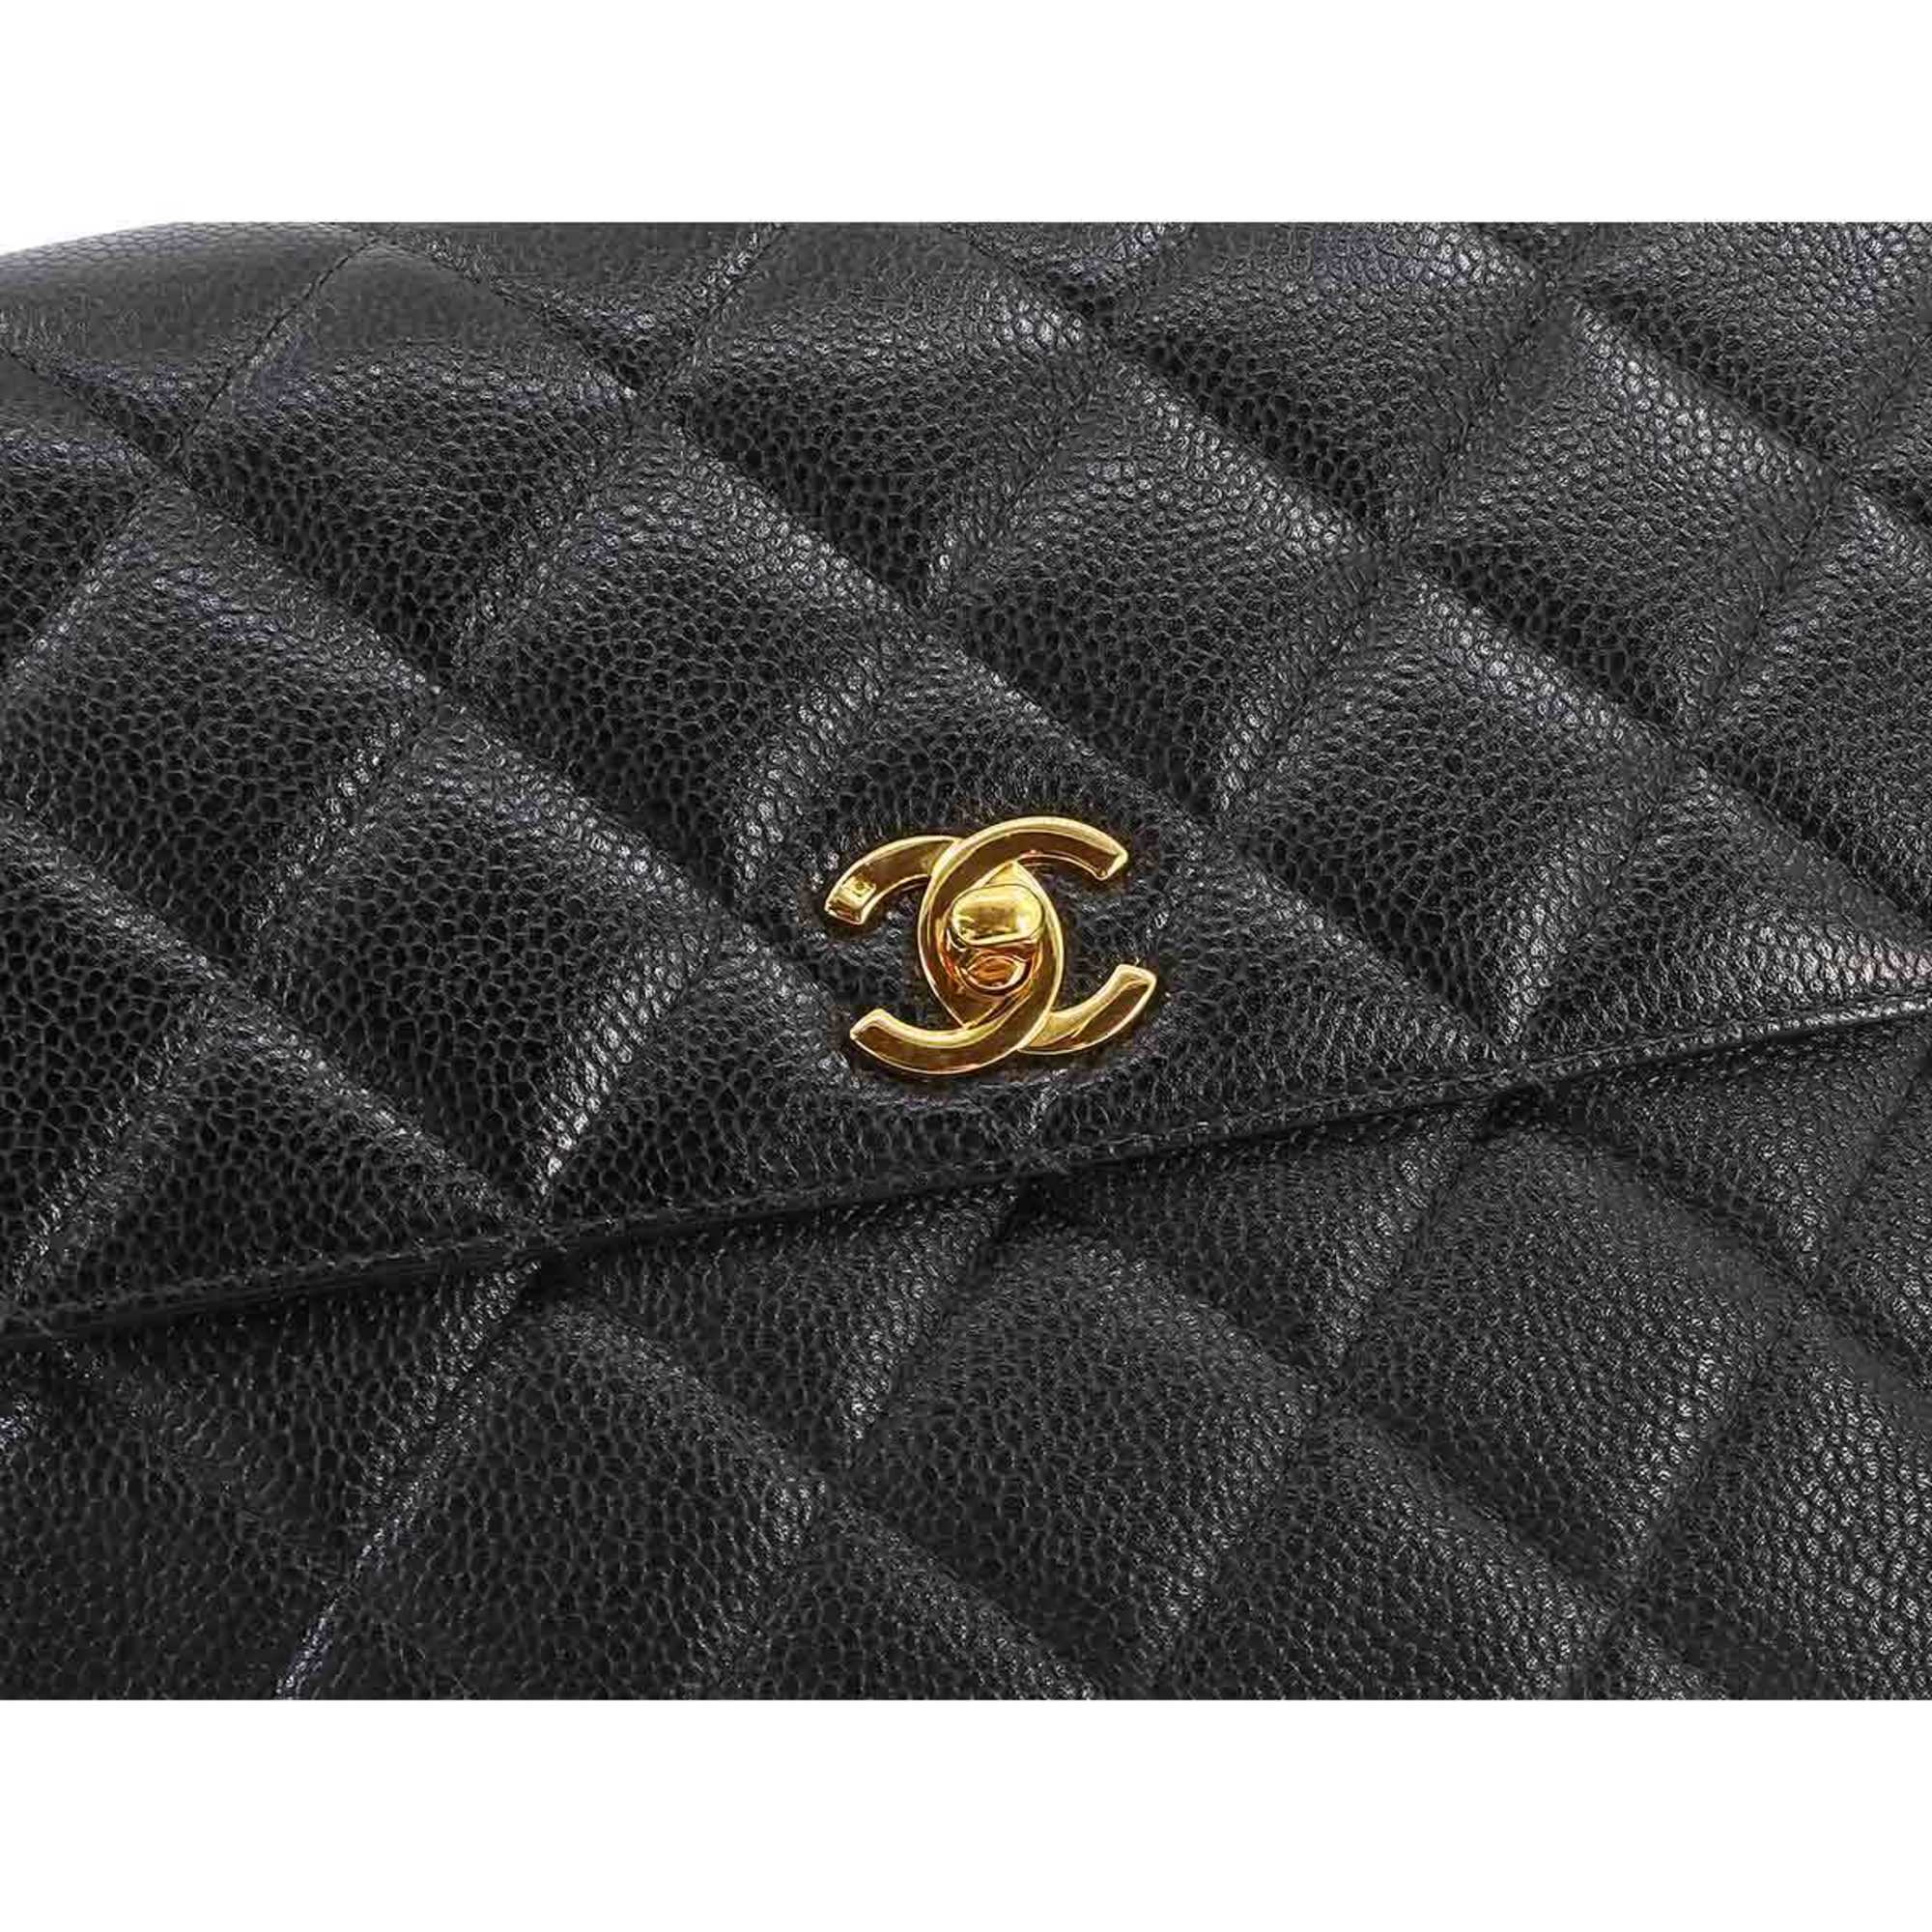 CHANEL Matelasse Chain Shoulder Bag Caviar Skin Black Gold Metal Fittings